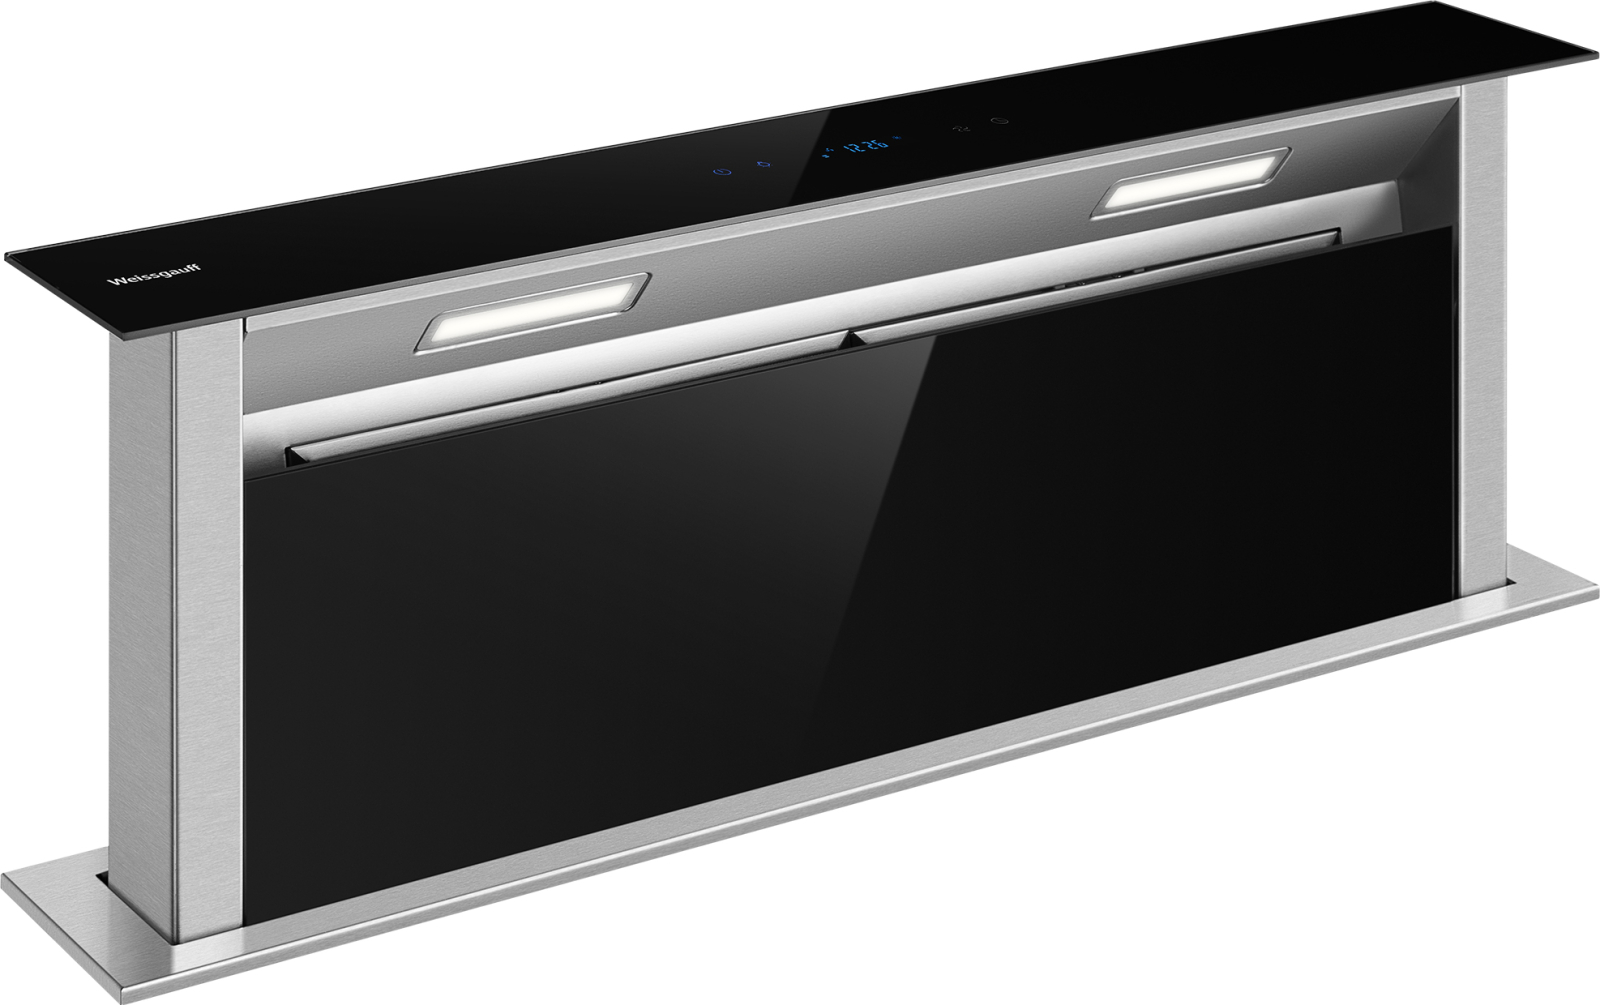 Вытяжка встраиваемая Weissgauff Down Draft 900 Touch Premium Inox серебристый вытяжка встраиваемая weissgauff tel 450 x серебристый